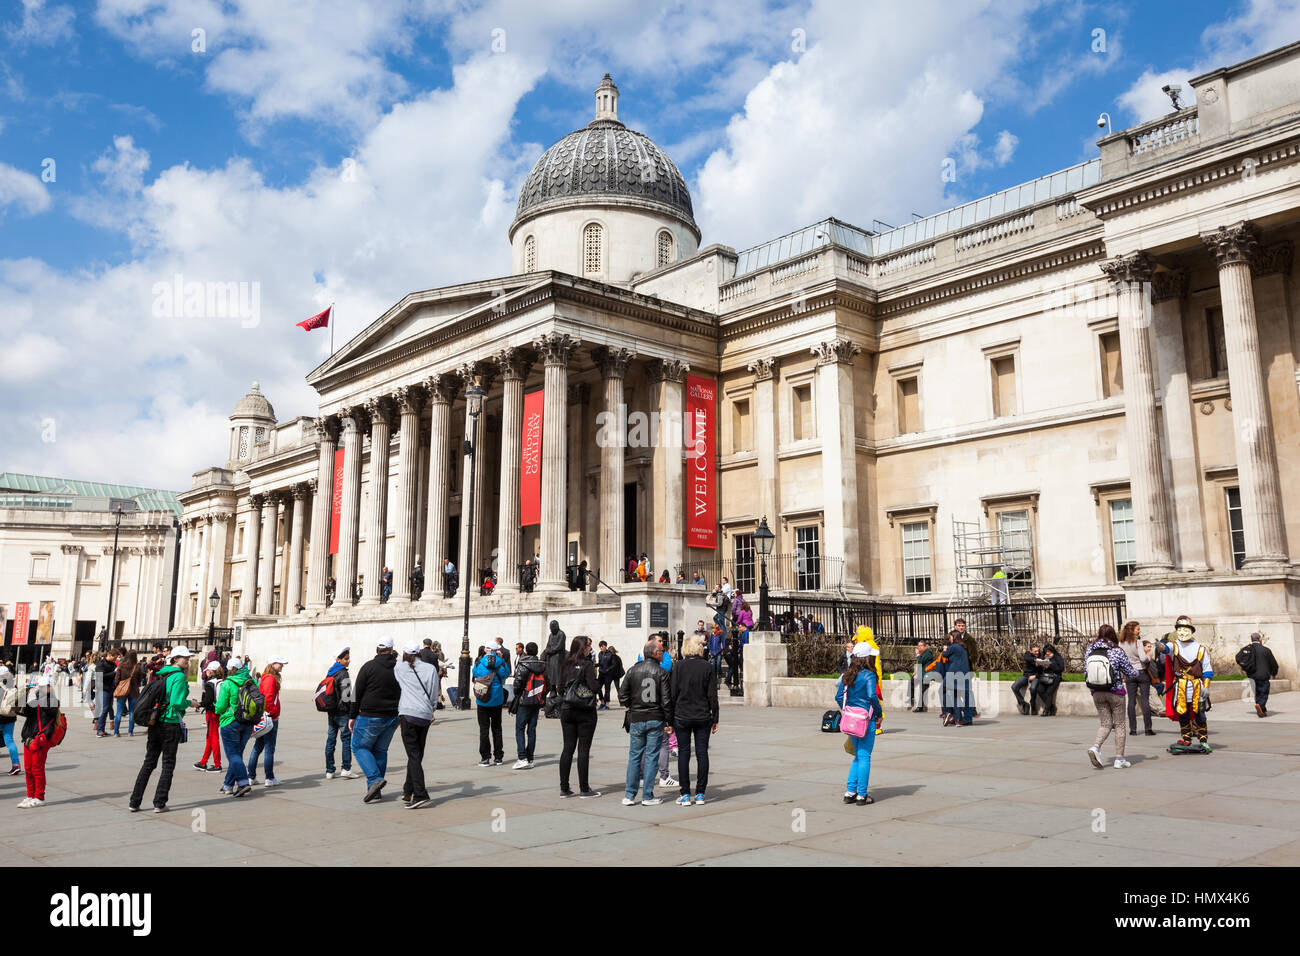 LONDON - 26.April: Touristen und Straßenkünstler außerhalb des National Gallery am Trafalgar Square, London am 26. April 2013. In der Galerie sind die na Stockfoto